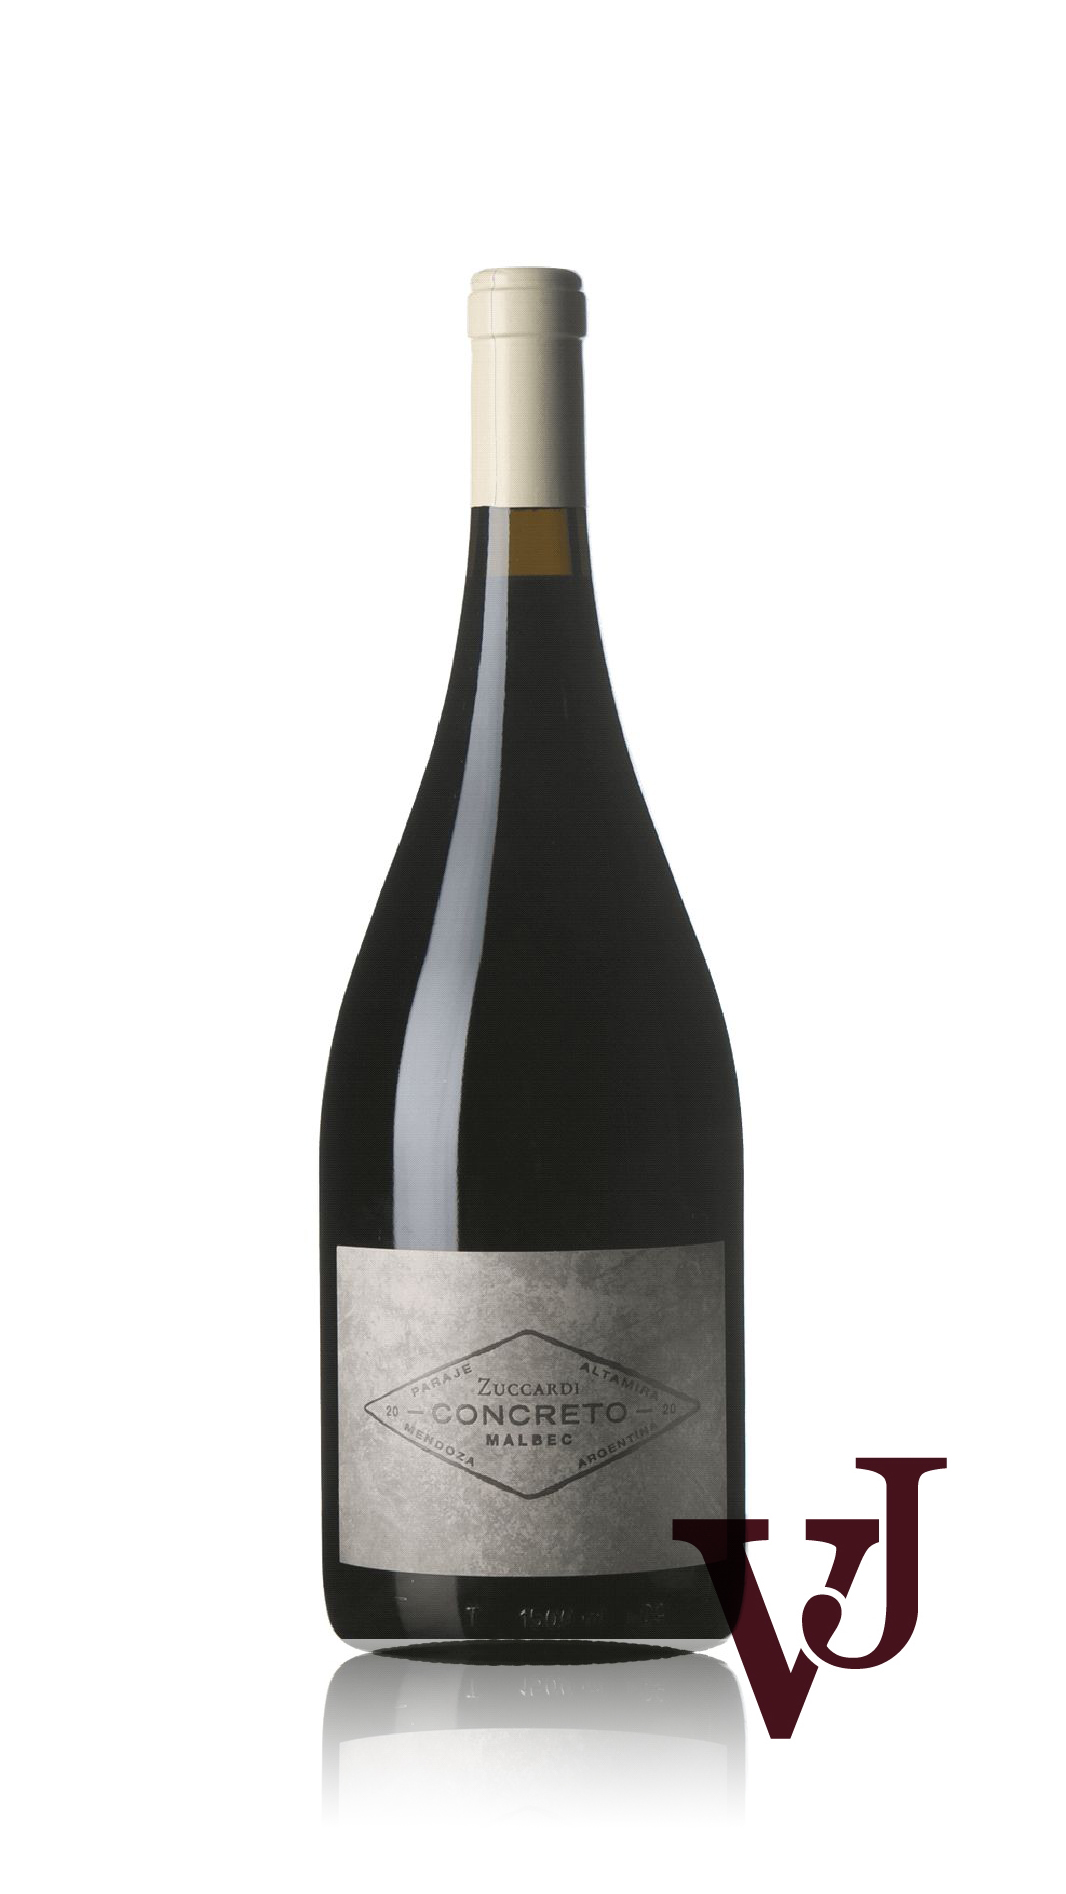 Rött Vin - Concreto artikel nummer 9221606 från producenten Familia Zuccardi från området Argentina